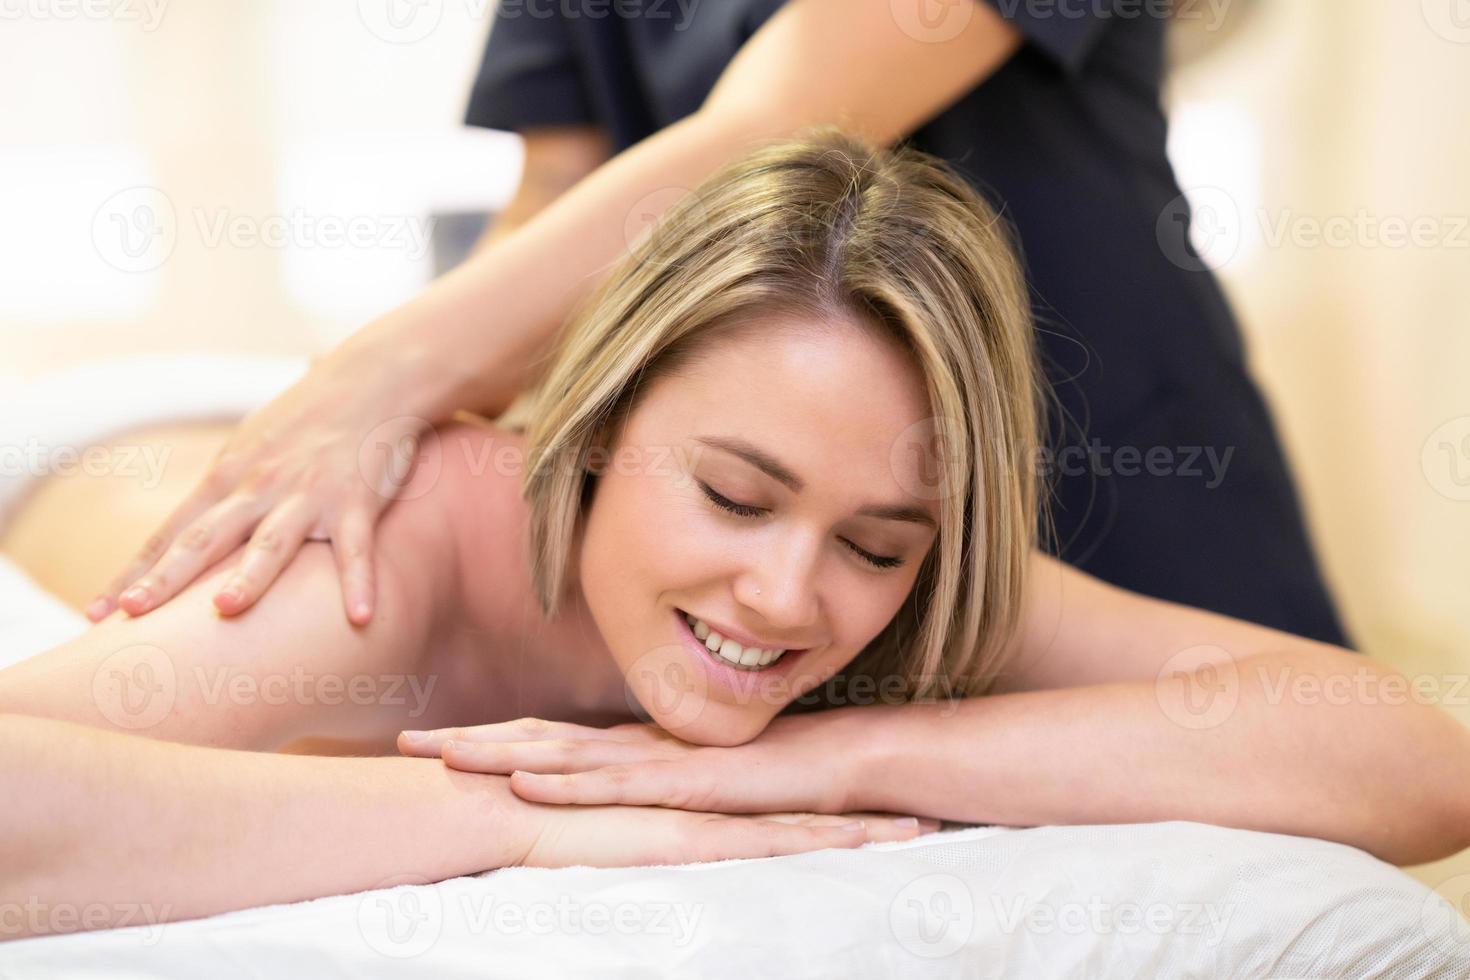 mulher deitada em uma maca, recebendo uma massagem nas costas. foto